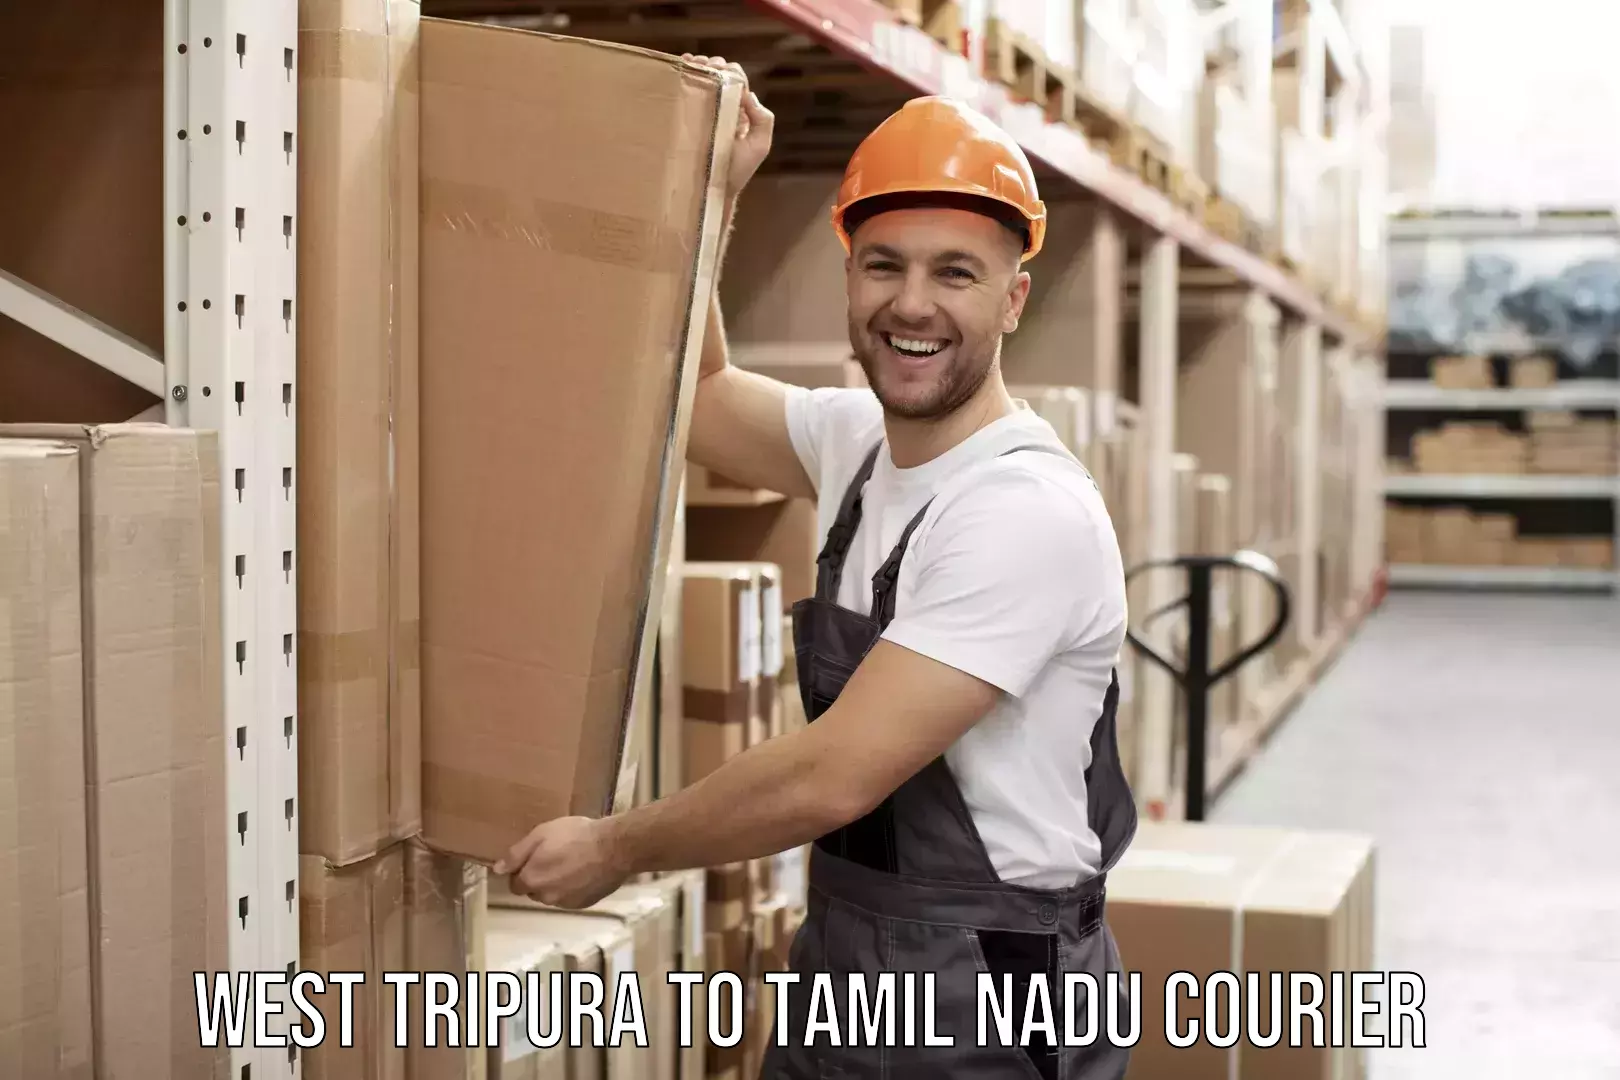 Furniture transport professionals West Tripura to Tamil Nadu